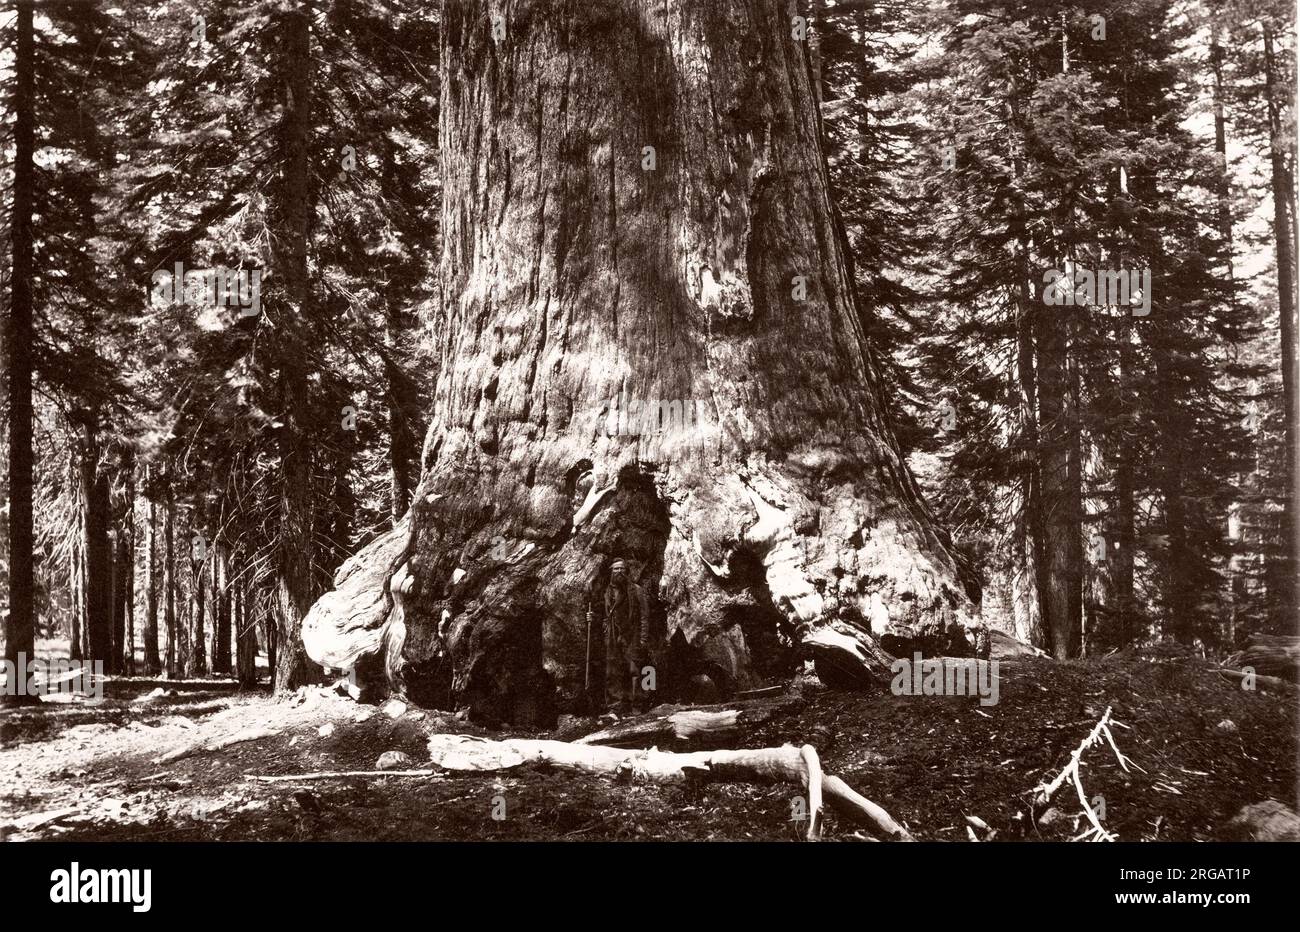 Photographie vintage du 19e siècle - géant Grizzle, séquoia géant, Mariposa Grove, Wawona, Californie, États-Unis, dans la partie la plus méridionale du parc national de Yosemite. Au premier plan se trouve Galen Clark (28 mars 1814 - 24 mars 1910), le premier européen américain à découvrir le bosquet de Mariposa, et est remarquable pour son rôle dans l'obtention de lois pour protéger Yosemite. Pendant 24 ans, elle a été gardienne du parc national de Yosemite. Banque D'Images